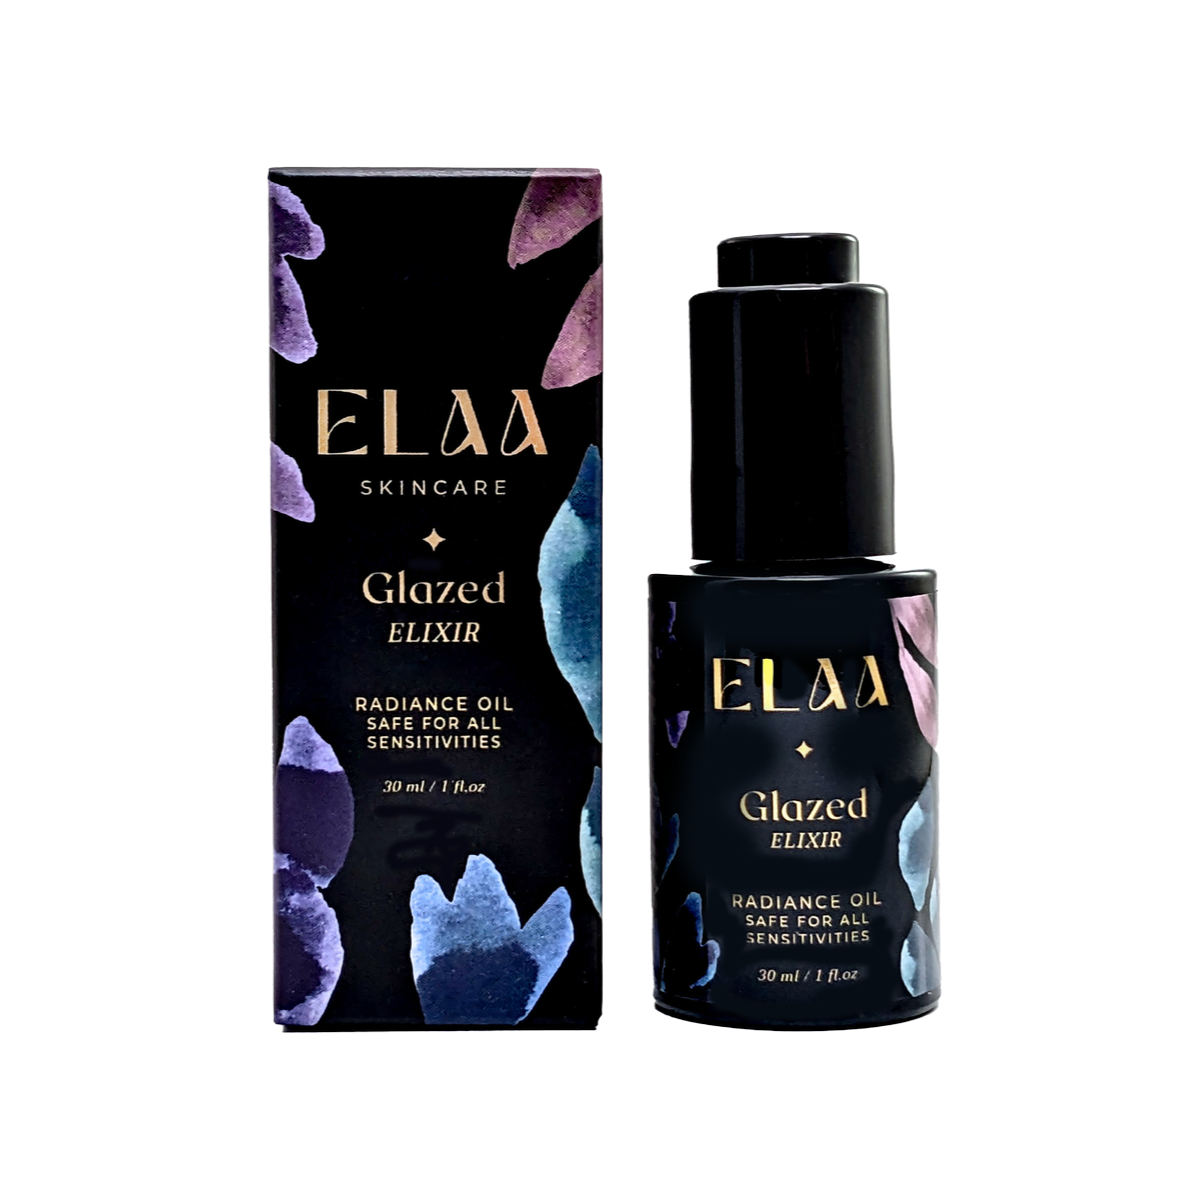 Elaa Skincare | Glazed Elixir | Radiance Oil For All